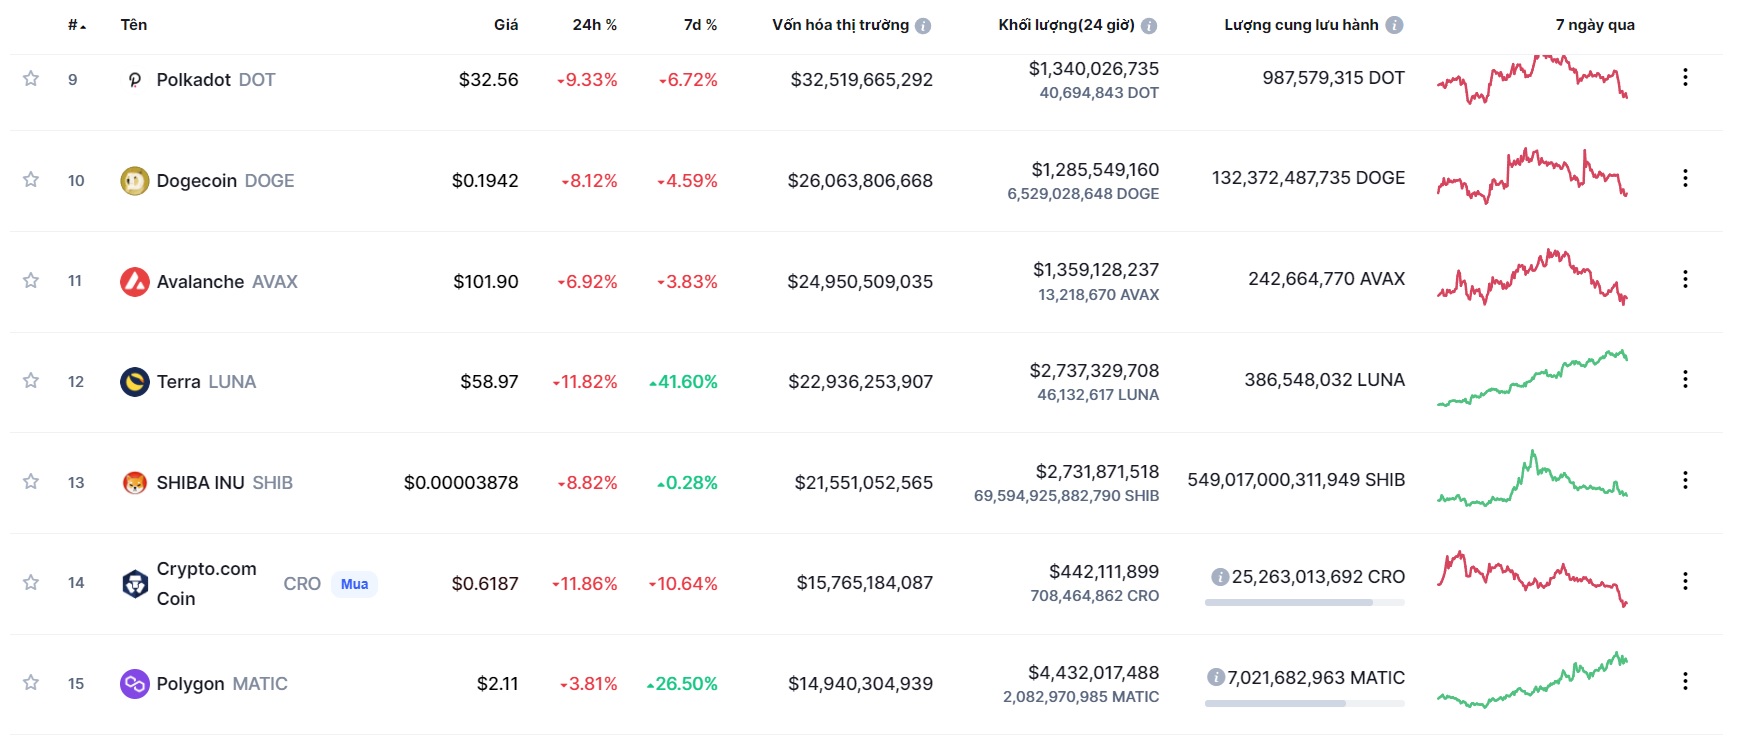 Giá Bitcoin hôm nay 4/12: Màu đỏ bao phủ, thị trường giảm mạnh - Ảnh 2